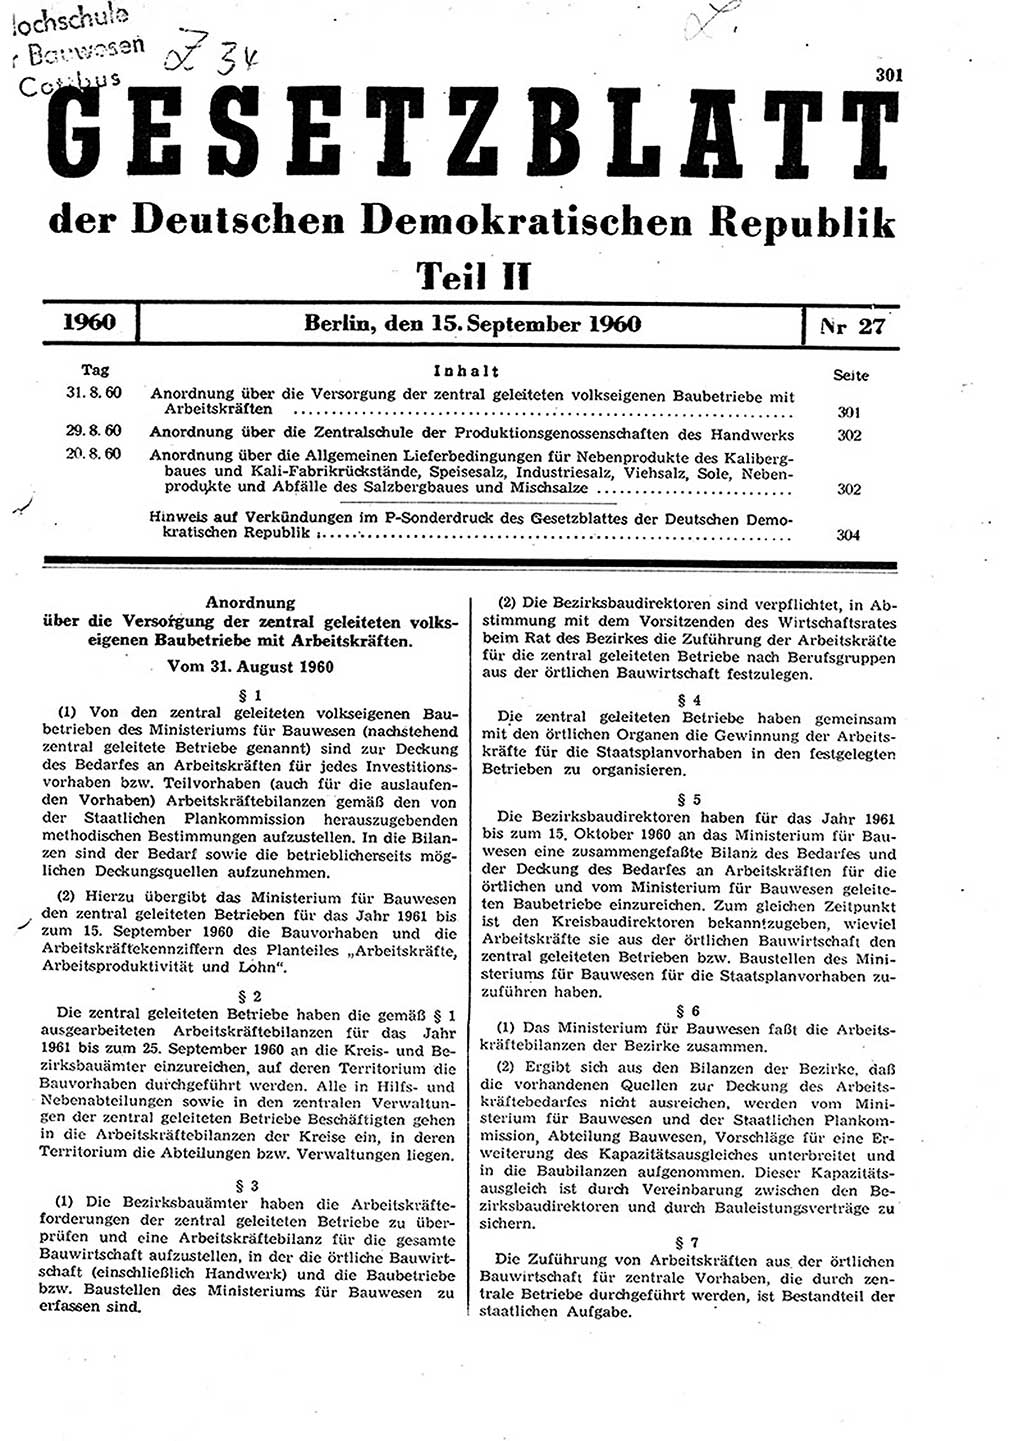 Gesetzblatt (GBl.) der Deutschen Demokratischen Republik (DDR) Teil ⅠⅠ 1960, Seite 301 (GBl. DDR ⅠⅠ 1960, S. 301)